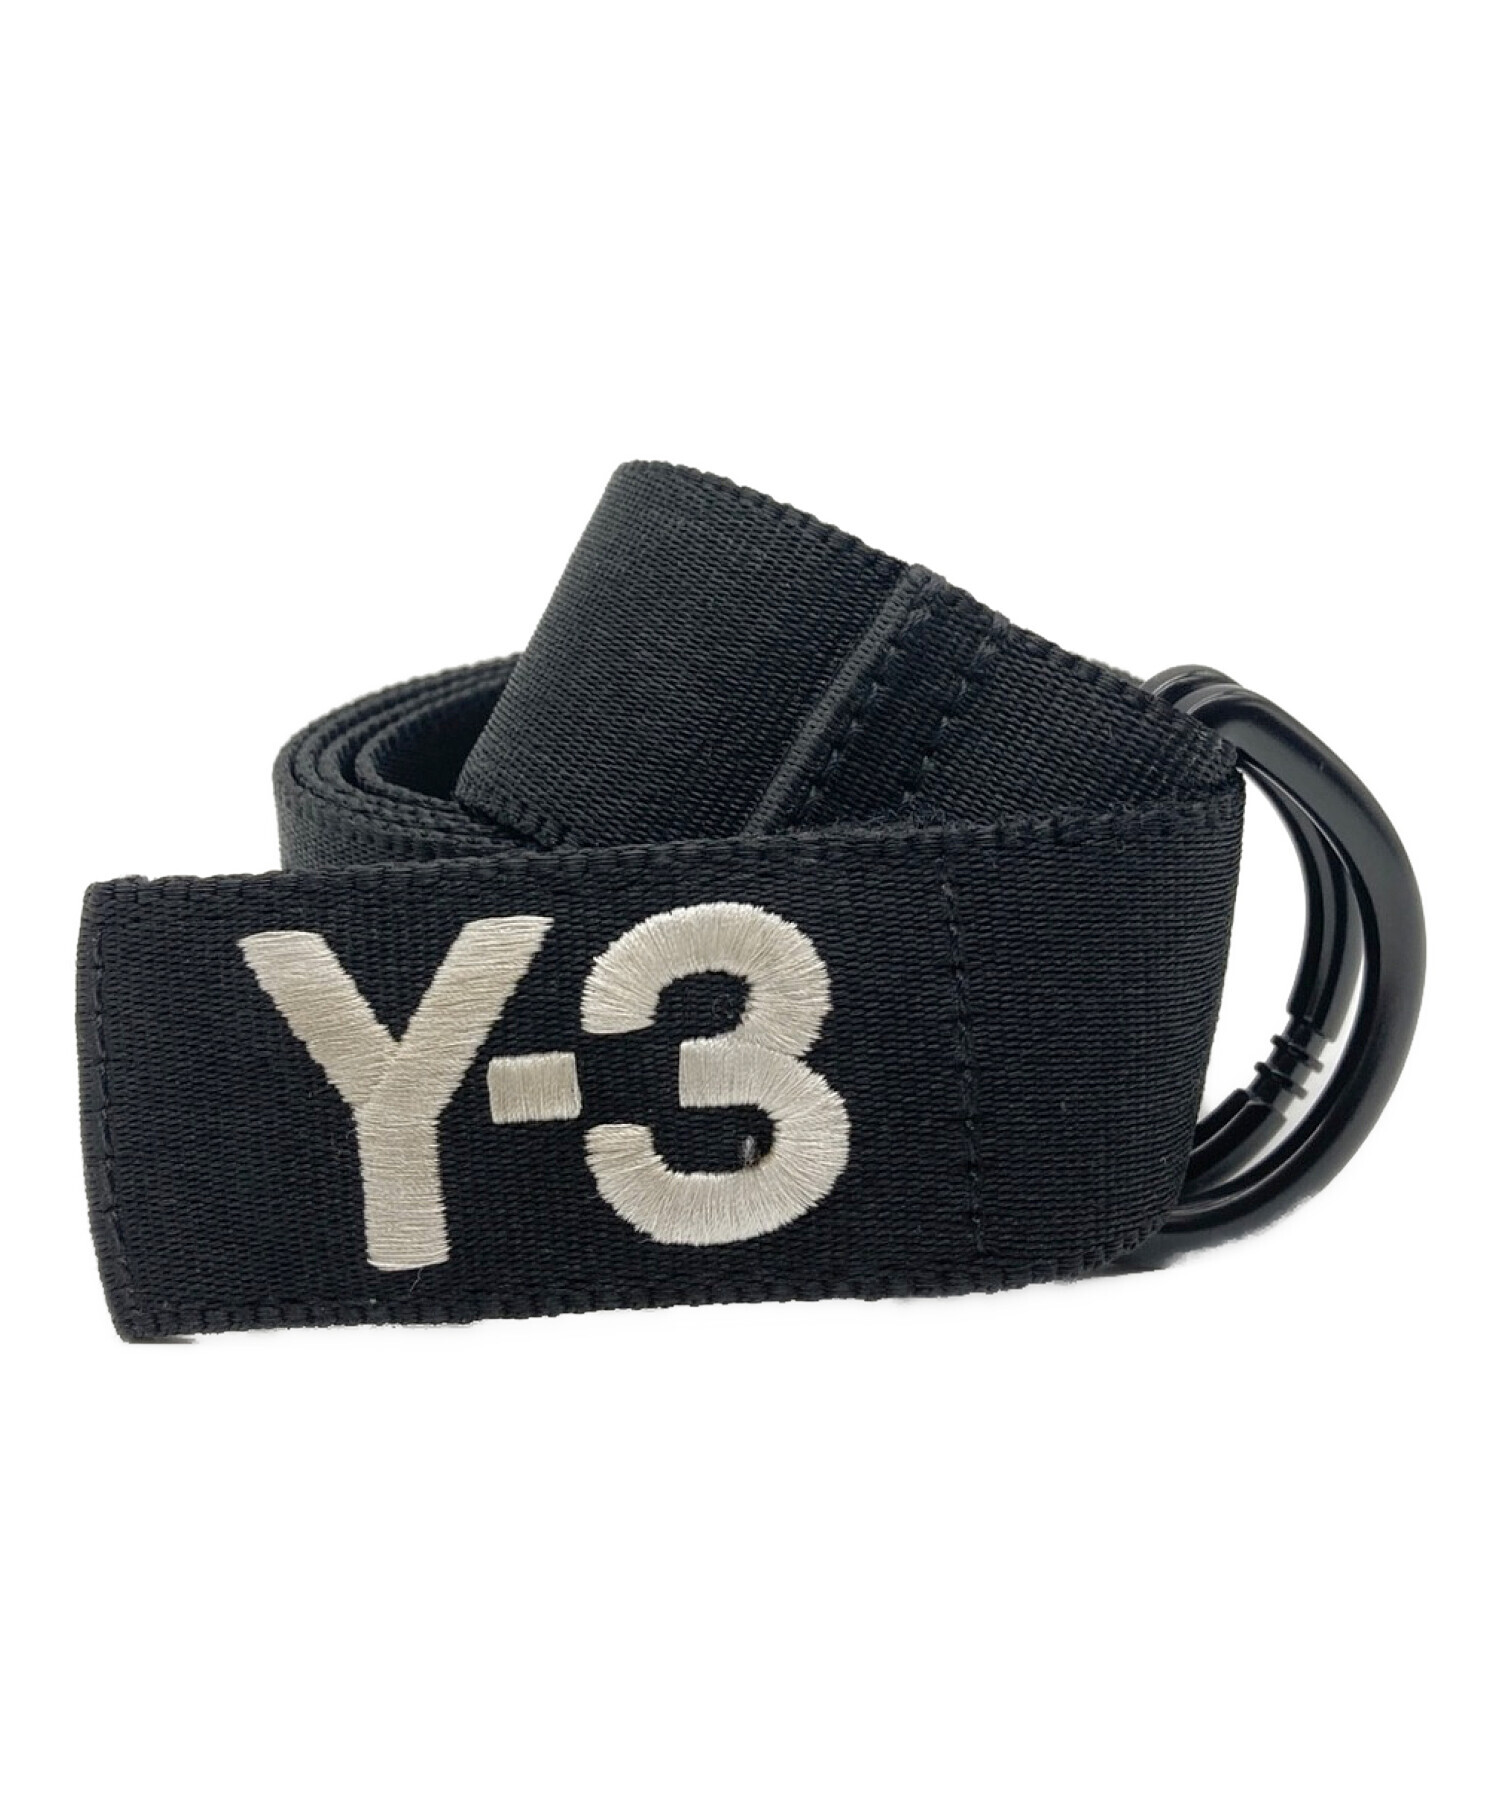 Y-3 (ワイスリー) ベルト ブラック サイズ:L/130CM